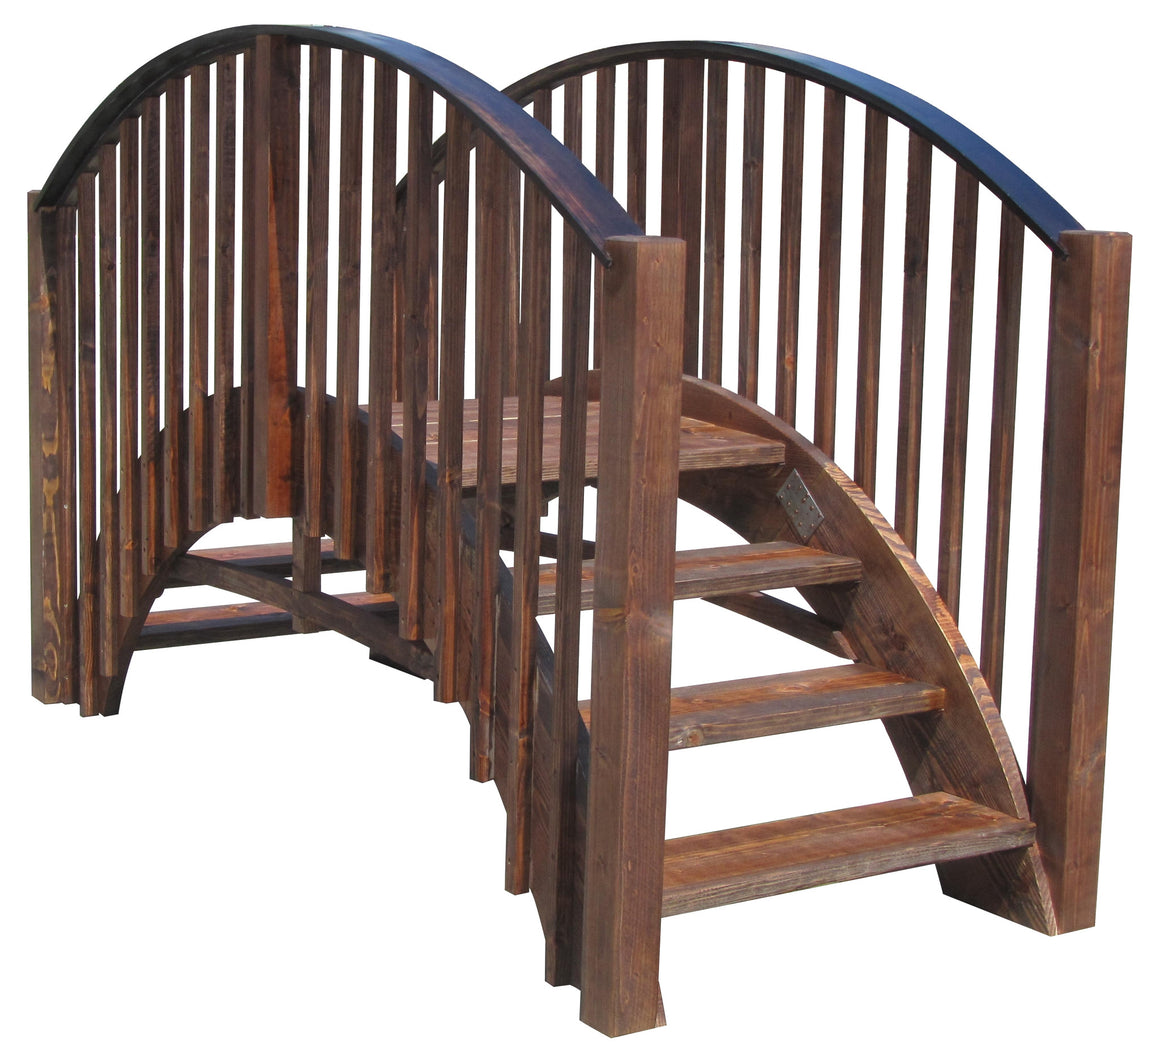 SamsGazebos 8-foot Japanese Imperial Wood Garden Stair Bridge, Brown, Treated - SamsGazebos Made to Order